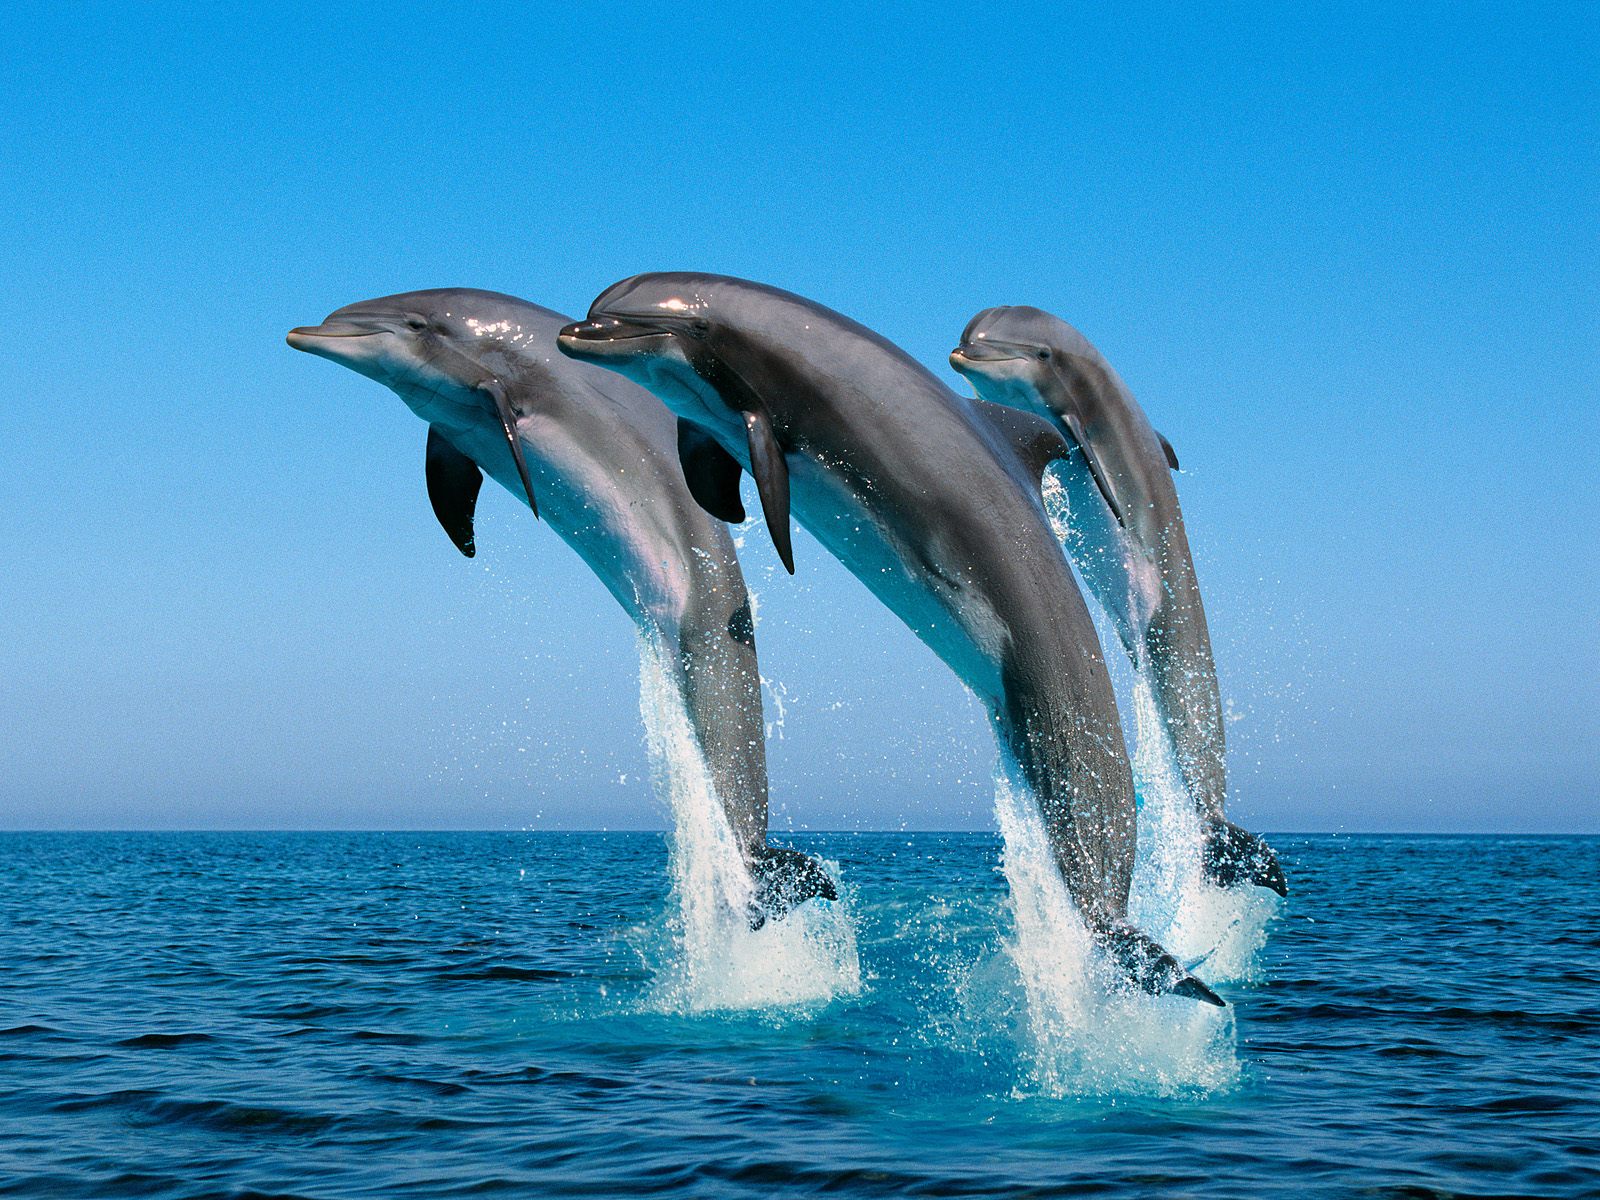 fondos de pantalla geniales para niños,delfín,delfín nariz de botella común,delfín nariz de botella,delfín común de pico corto,mamífero marino